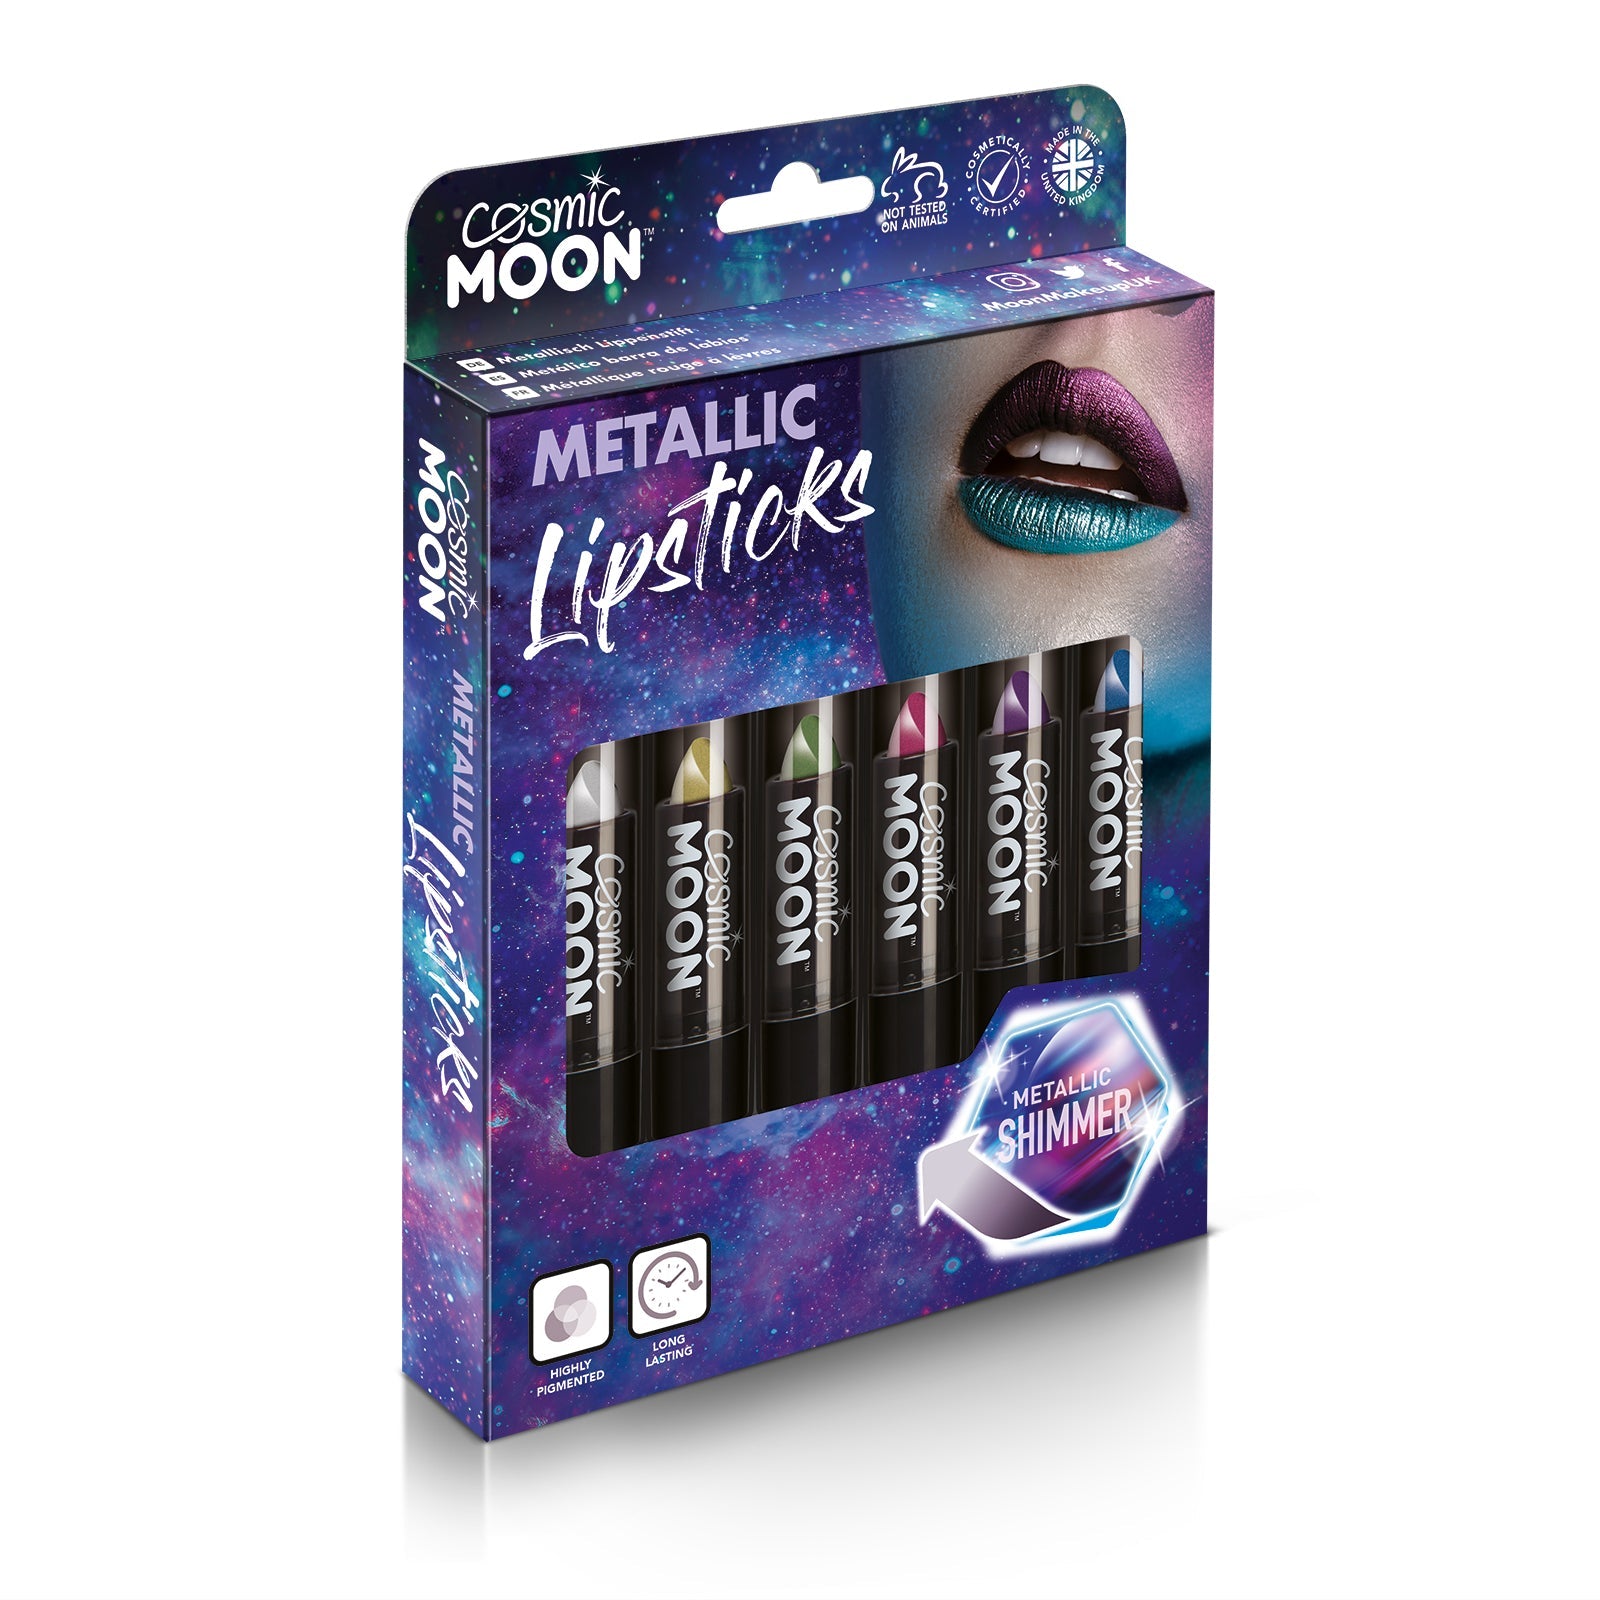 Metallic Lipstick Boxset - 6 lipsticks. Cosmetically certified, FDA & Health Canada compliant and cruelty free.